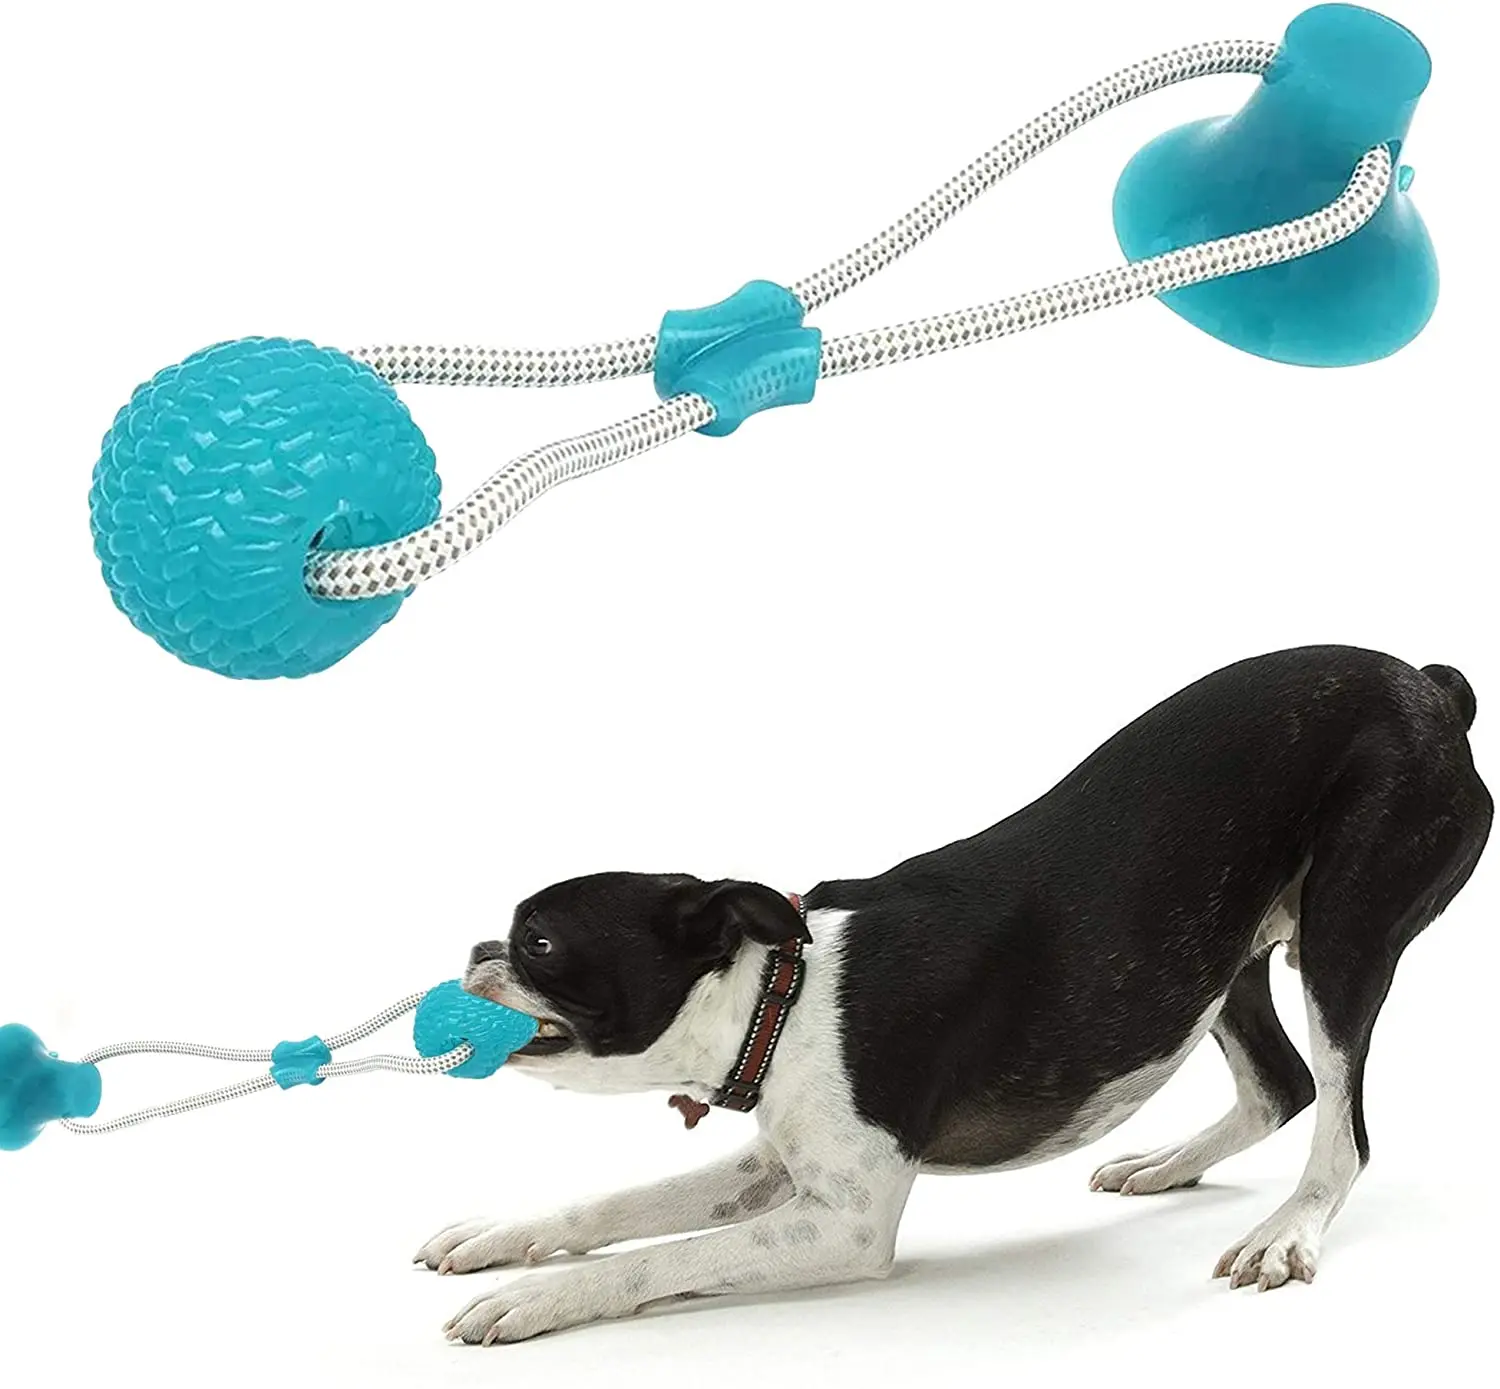 

Собака игрушки для щенка, домашних животных интерактивные всасывания чашка пуш-ап TPR мяч надувные игрушки молярная Укус игрушка эластичные ...